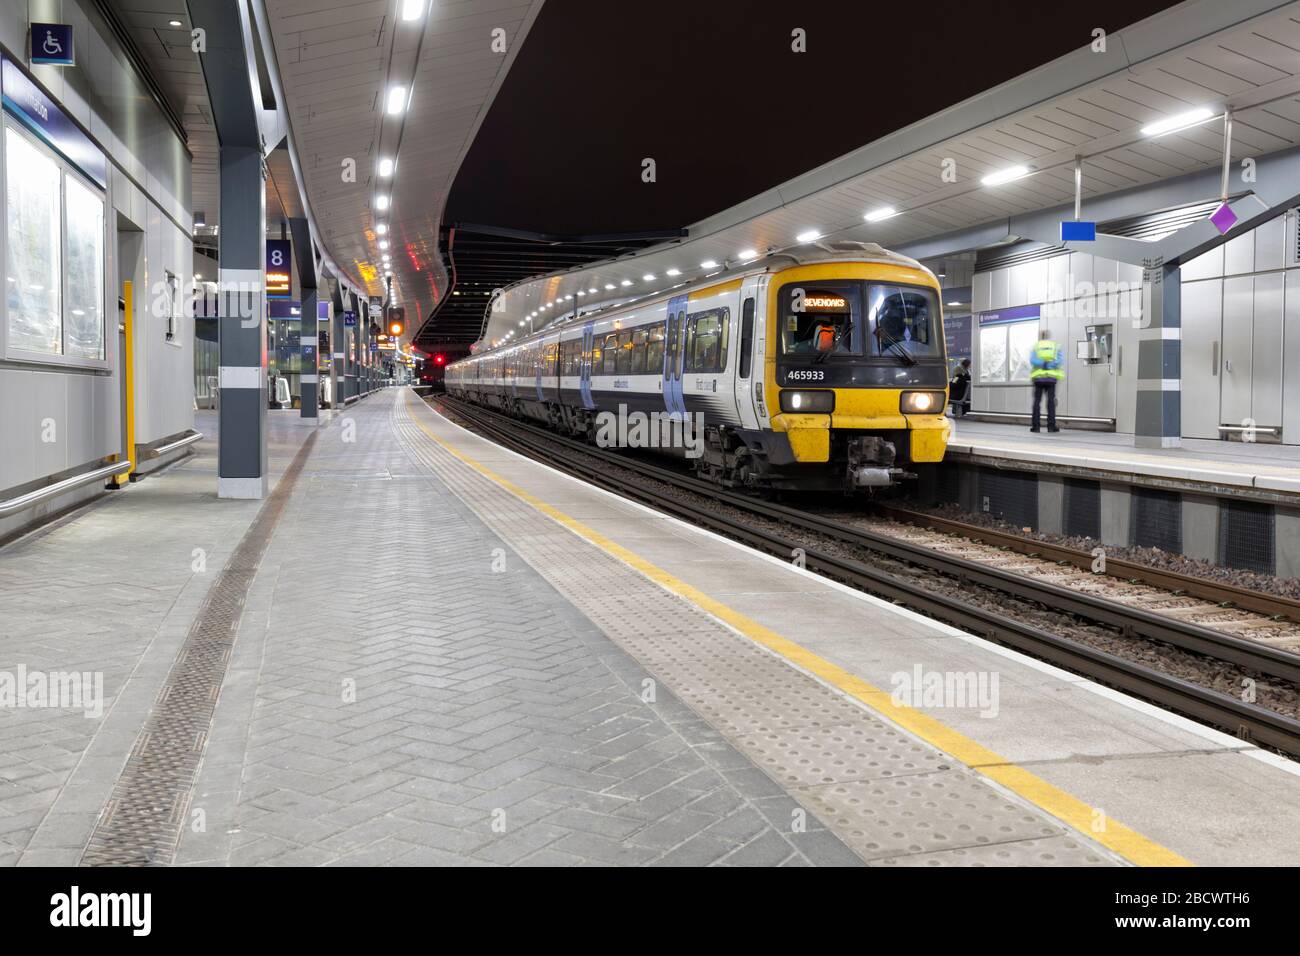 Treni del sud-est classe 465 treni networker 465933 + 465931 alla stazione ferroviaria di London Bridge di notte. Foto Stock